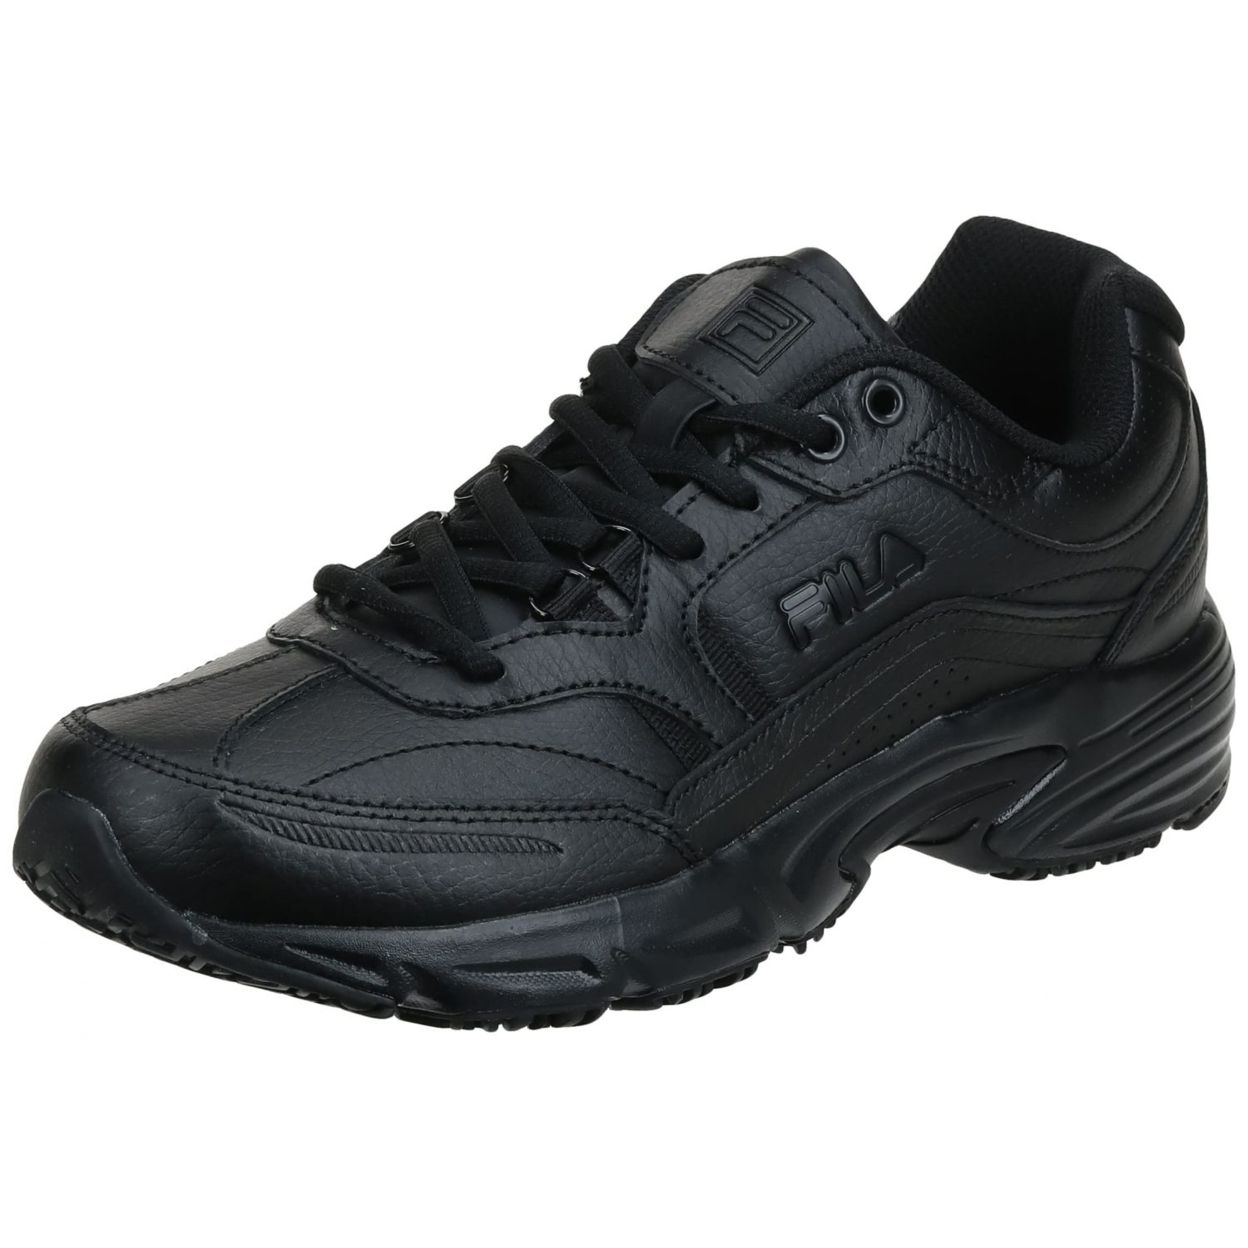 Fila Men's, Memory Workshift Slip Resistant Composite Toe Shoe - Wide Width BLK/BLK/BLK - BLACK/BLACK/BLACK, 10 Wide